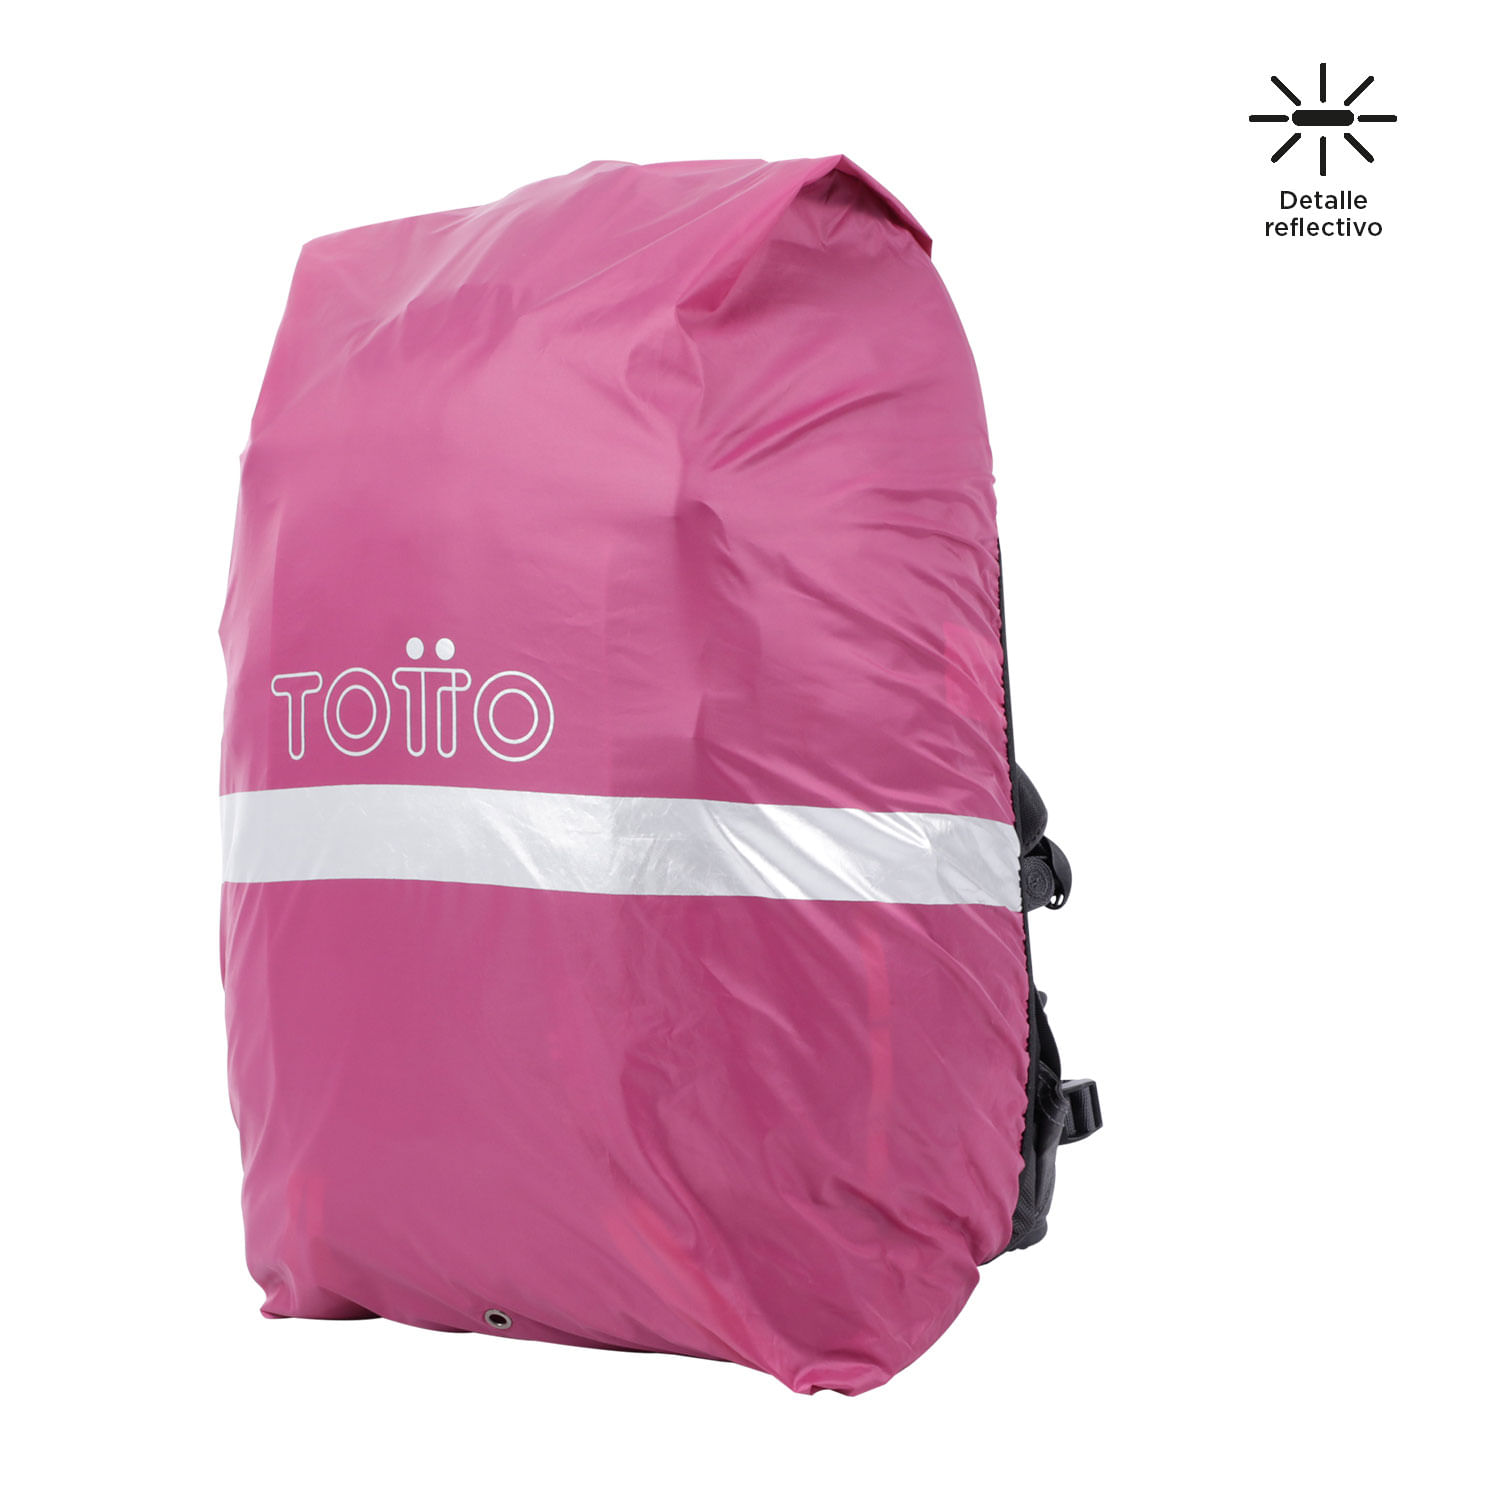 Totto - Es mejor estar siempre preparado con tu mochila impermeable, con  reflectivos en los costados y correas.😎🎒 ¿Ya estás preparado para la  lluvia? 🌧👊